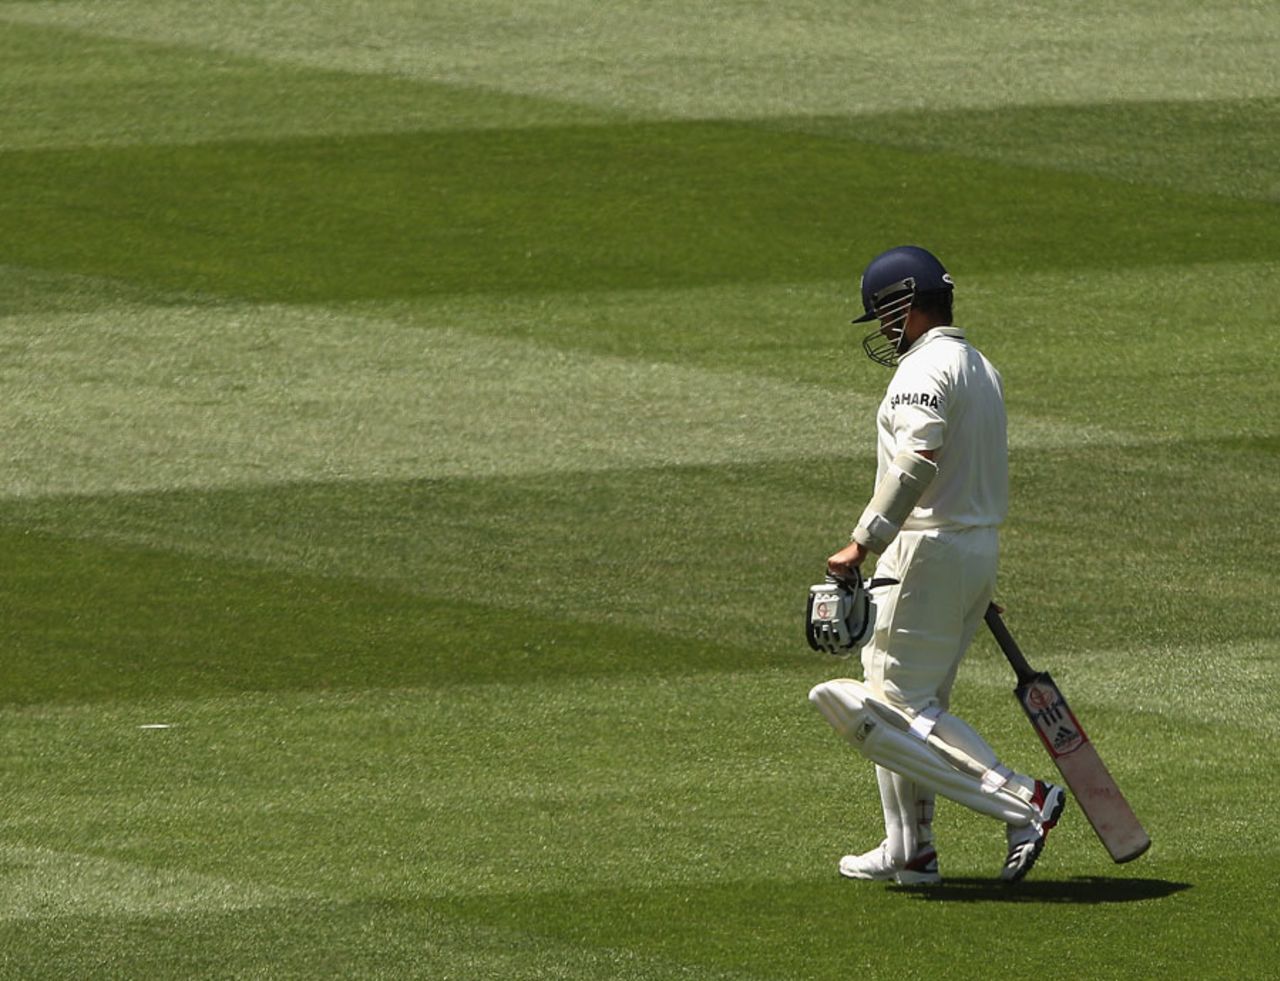 Sachin Tendulkar walks off, Australia v India, 1st Test, Melbourne, 4th day, December 29, 2011